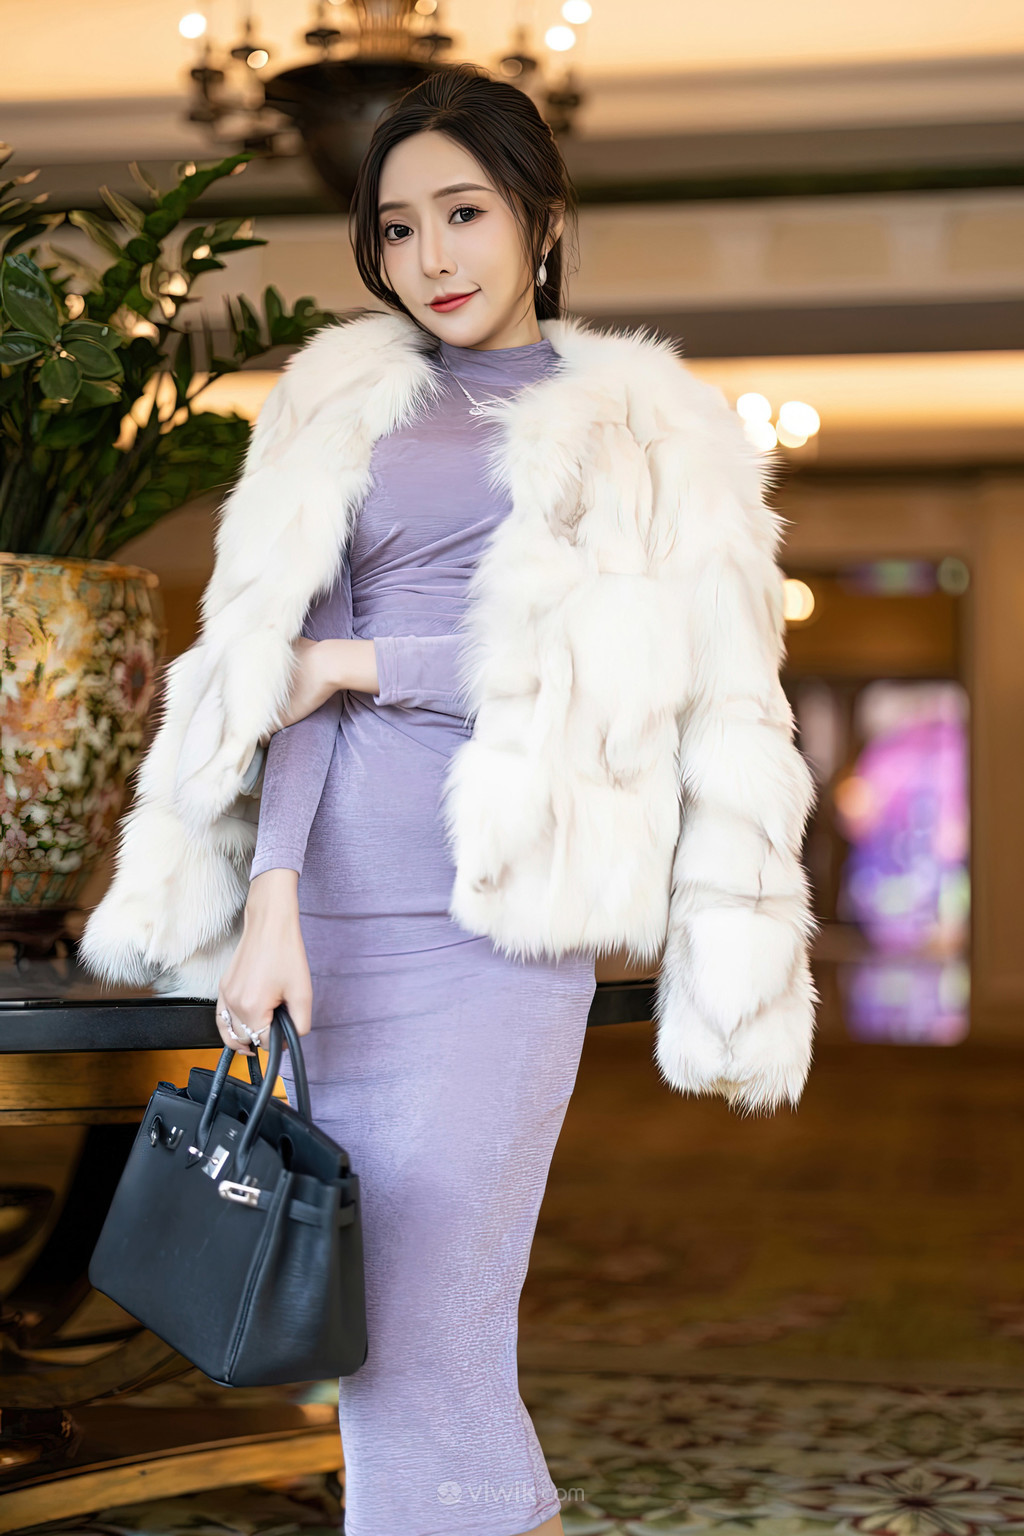 亚洲国产精品SUV皮草紫色连衣裙美女性感写真图片